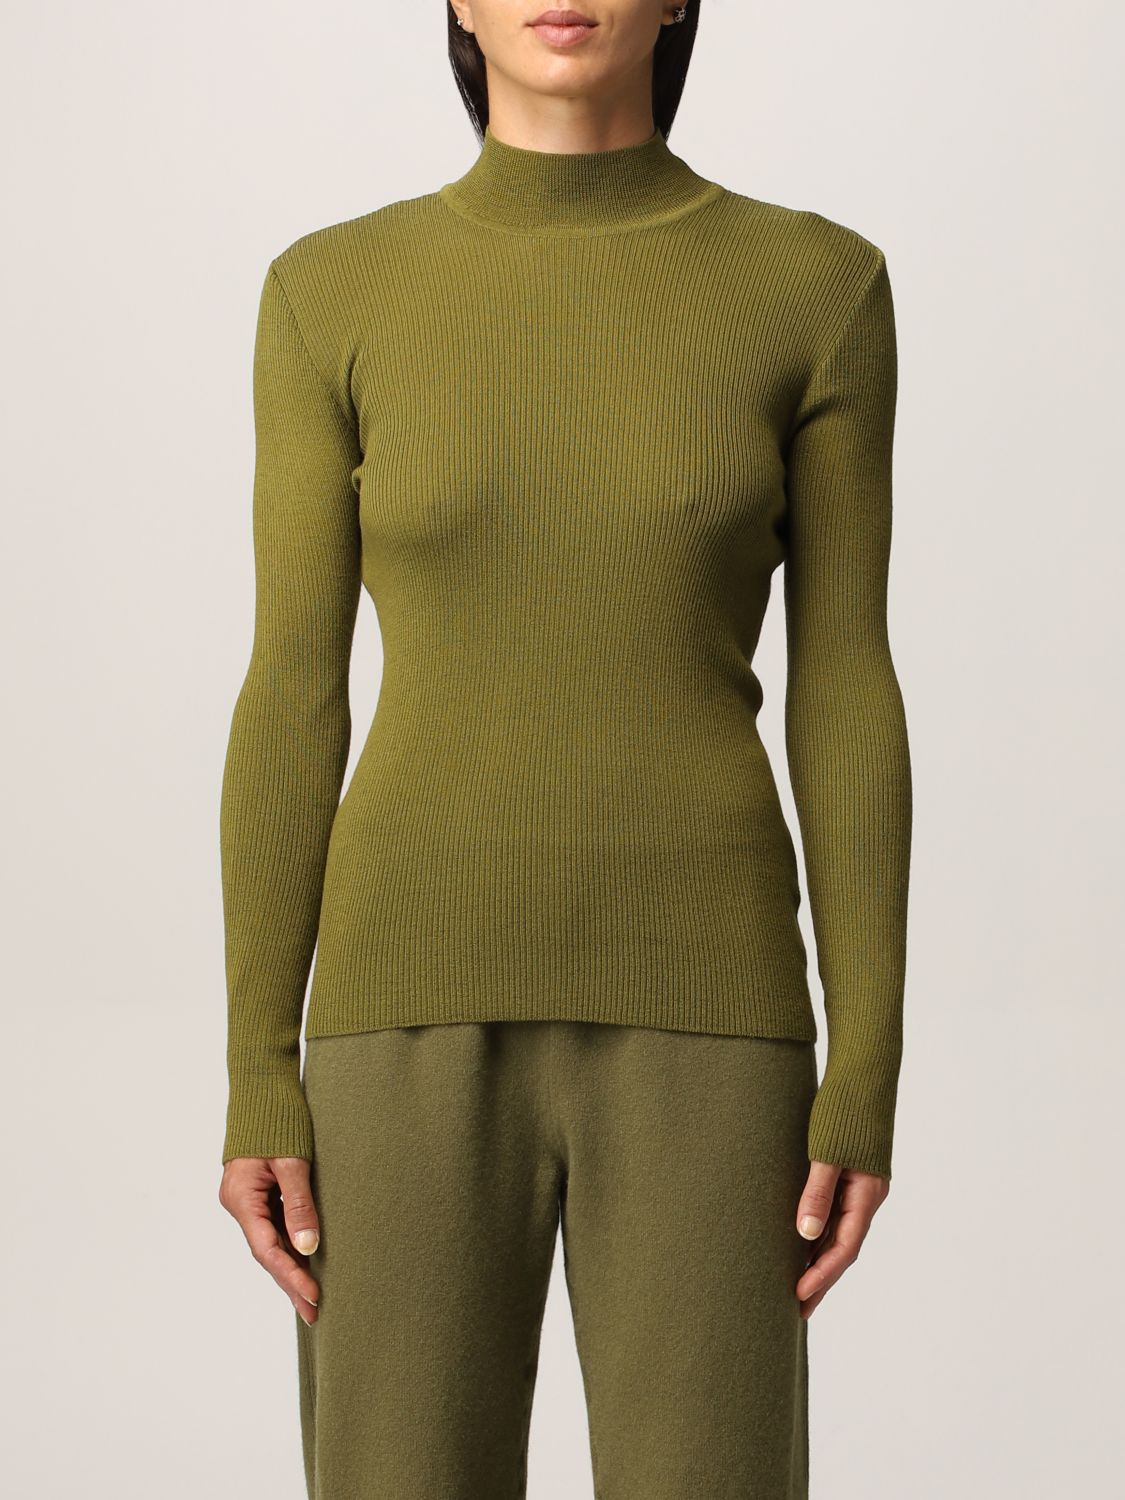 ALBERTA FERRETTI: ribbed virgin wool sweater - Green | Alberta Ferretti ...